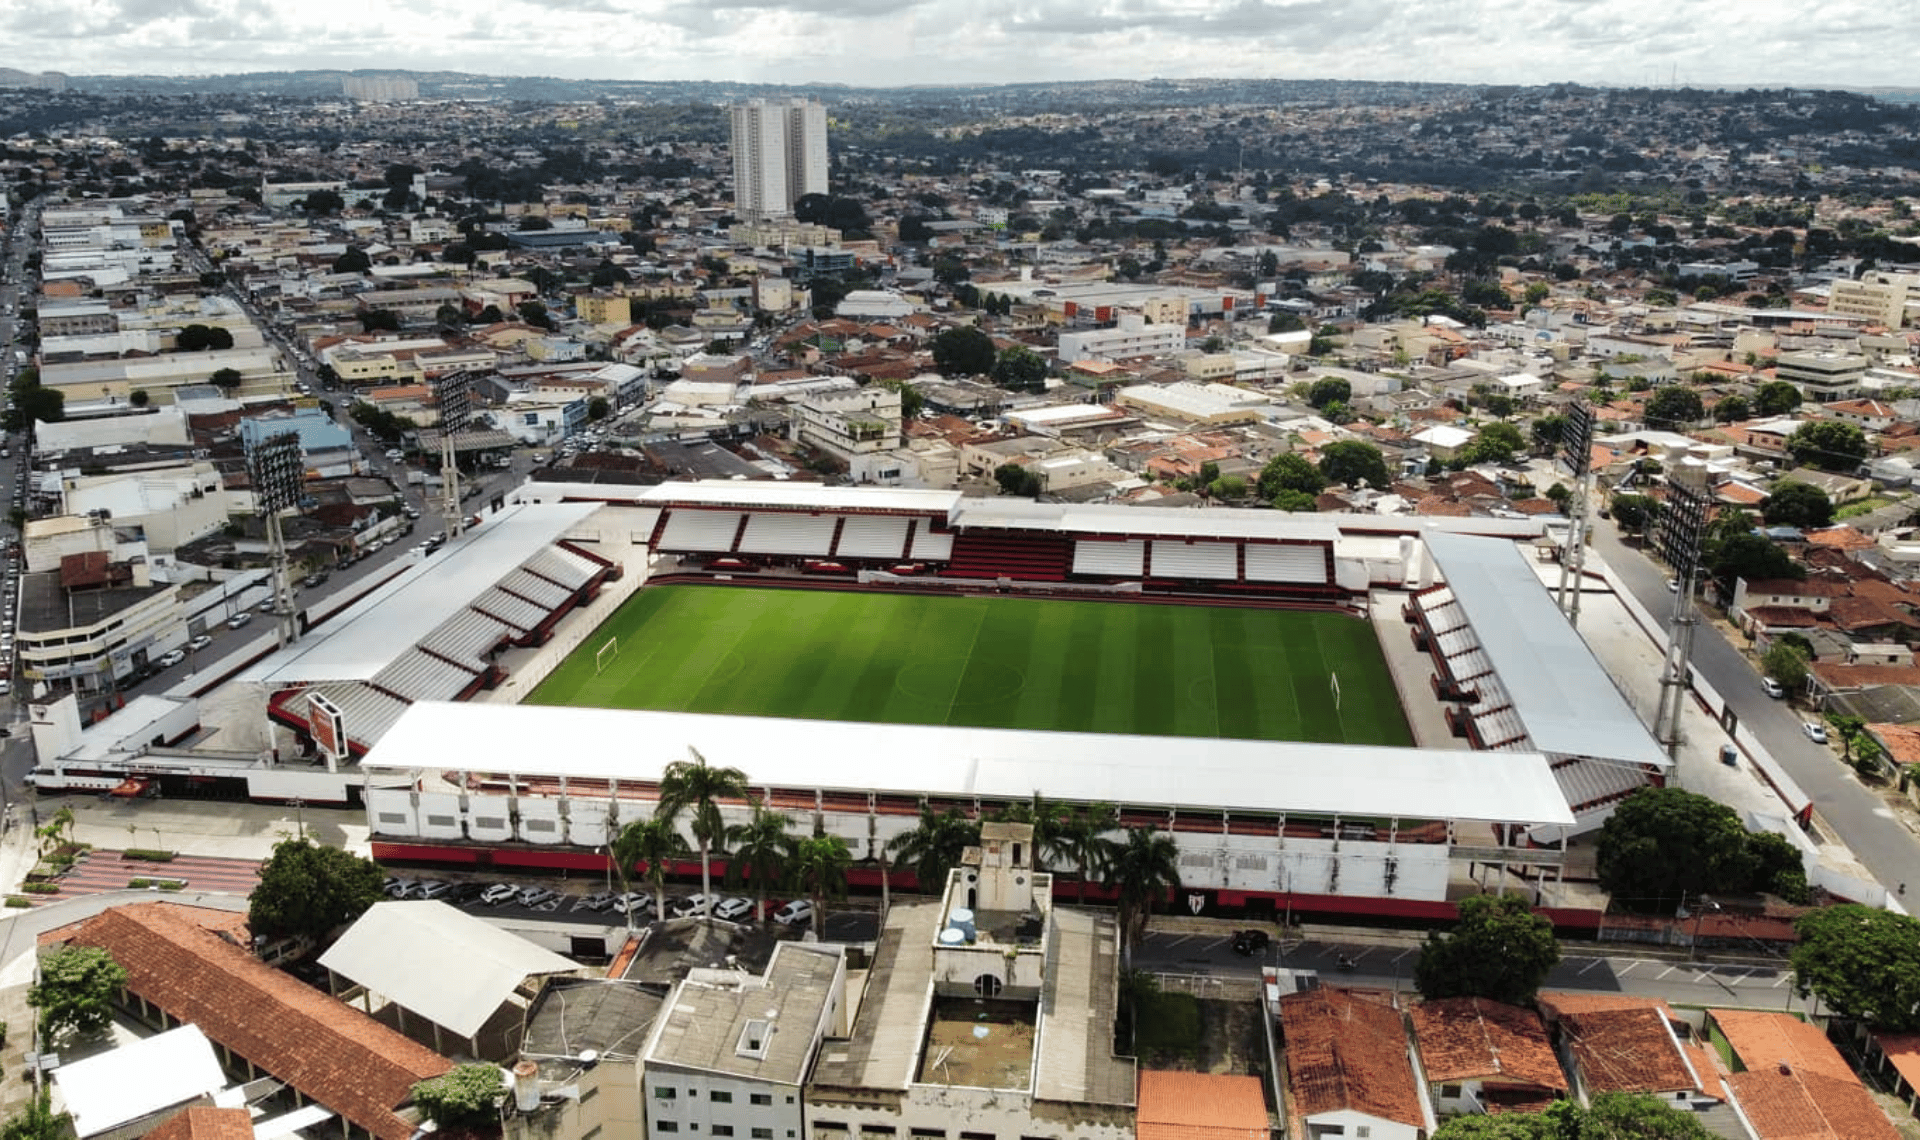 Estádio Antônio Accioly